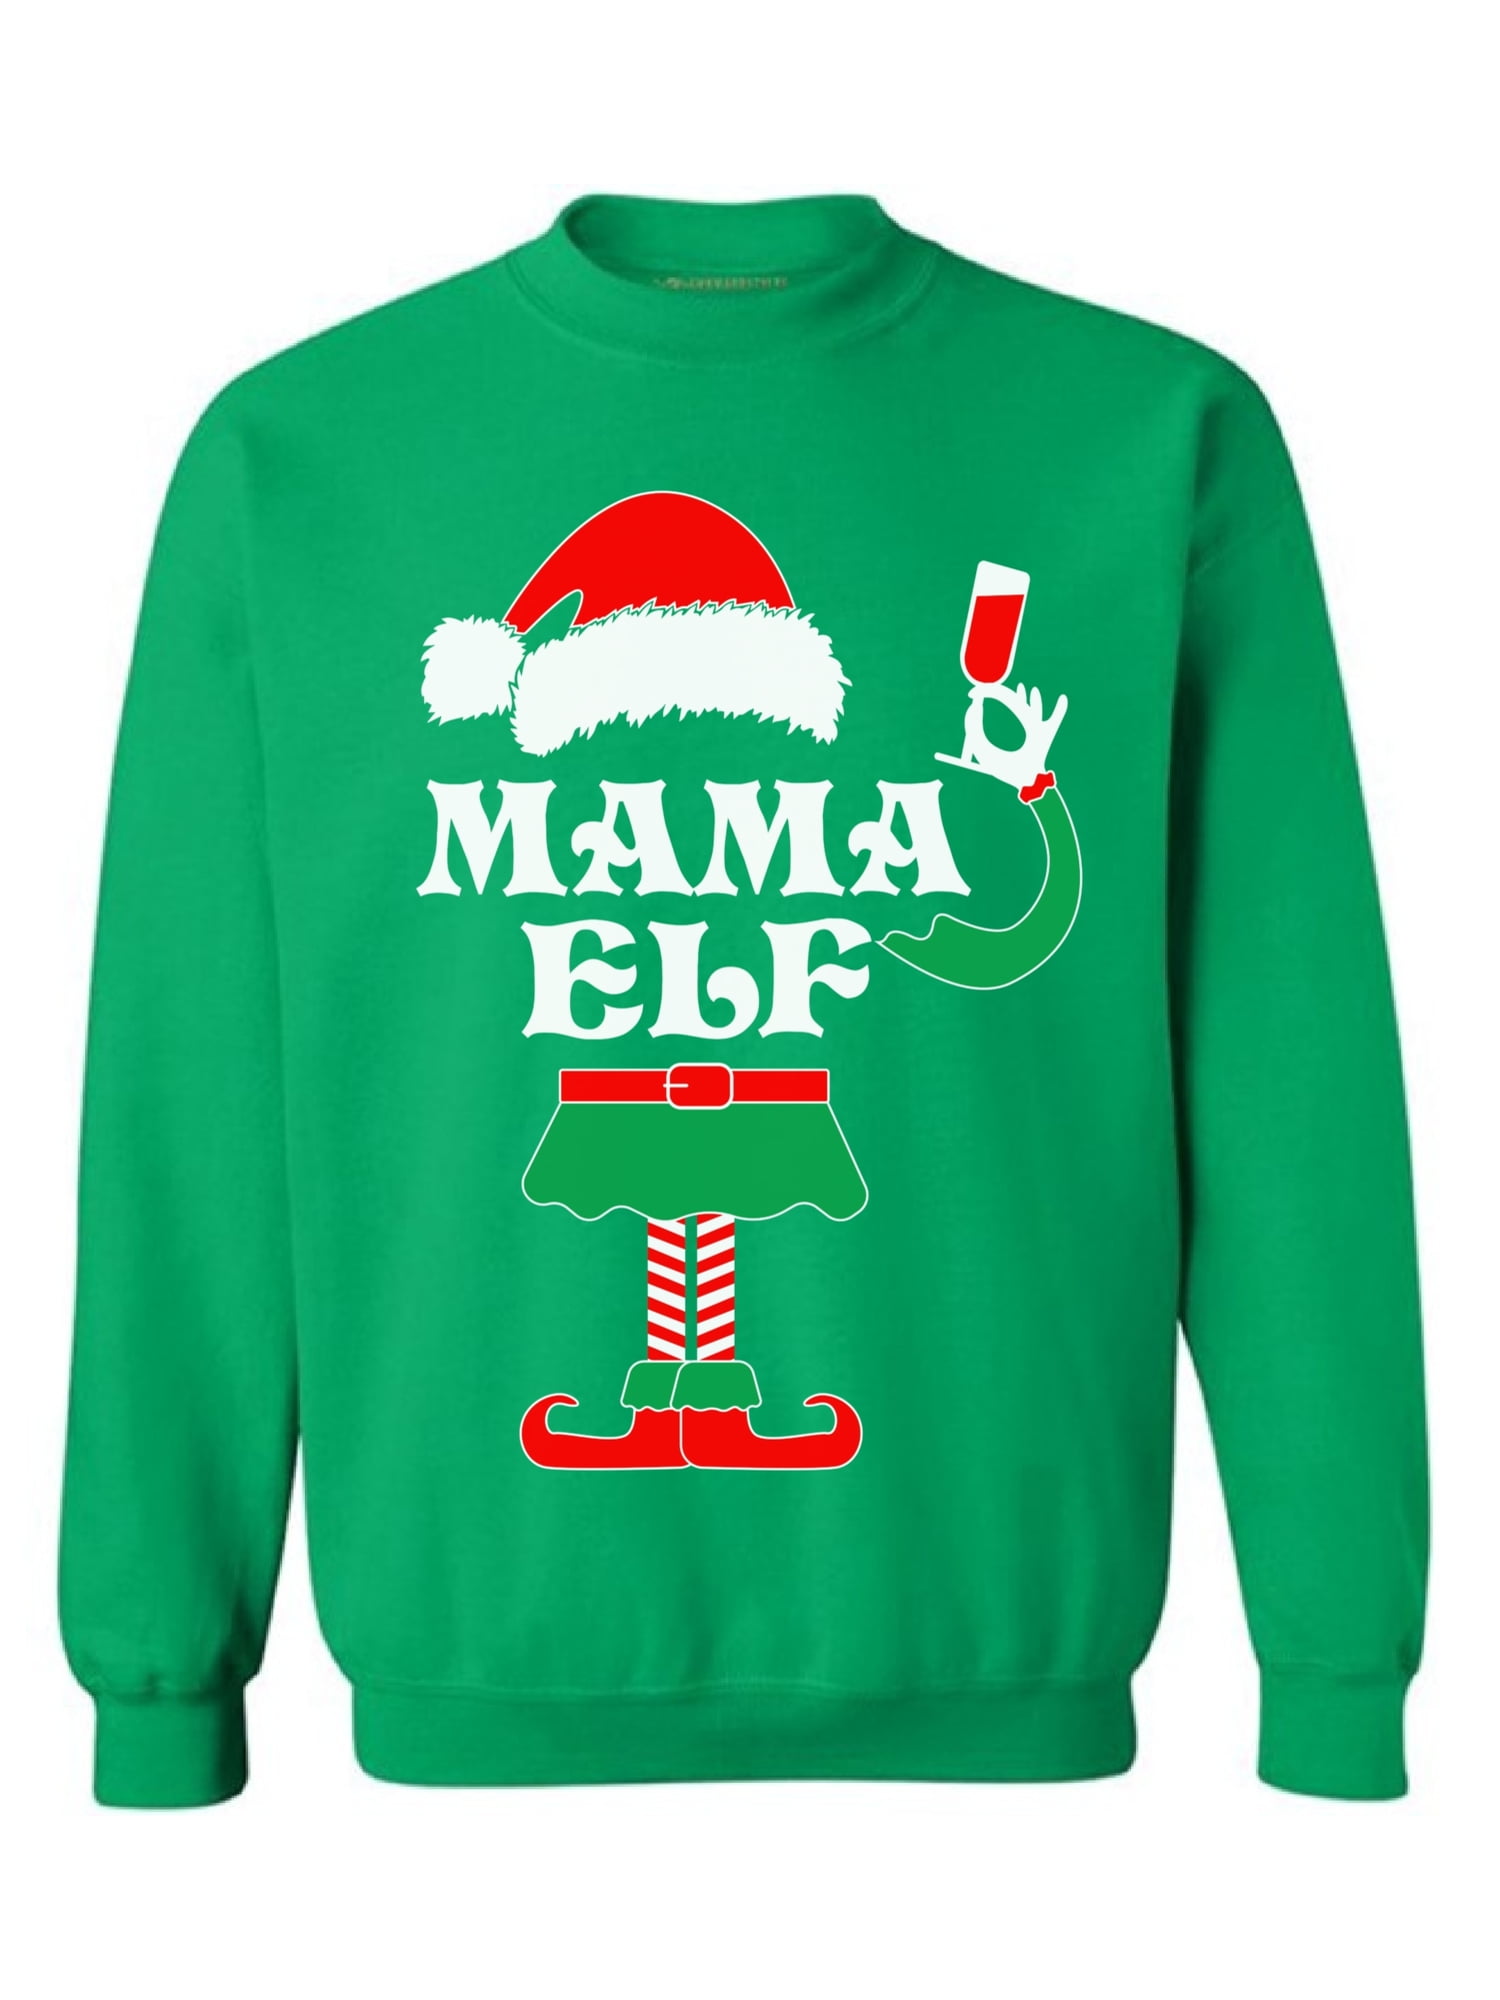 Awkward Styles Mommy Elf Sweatshirt Elf Christmas Sweater Ugly Christmas Elf Mom Gifts